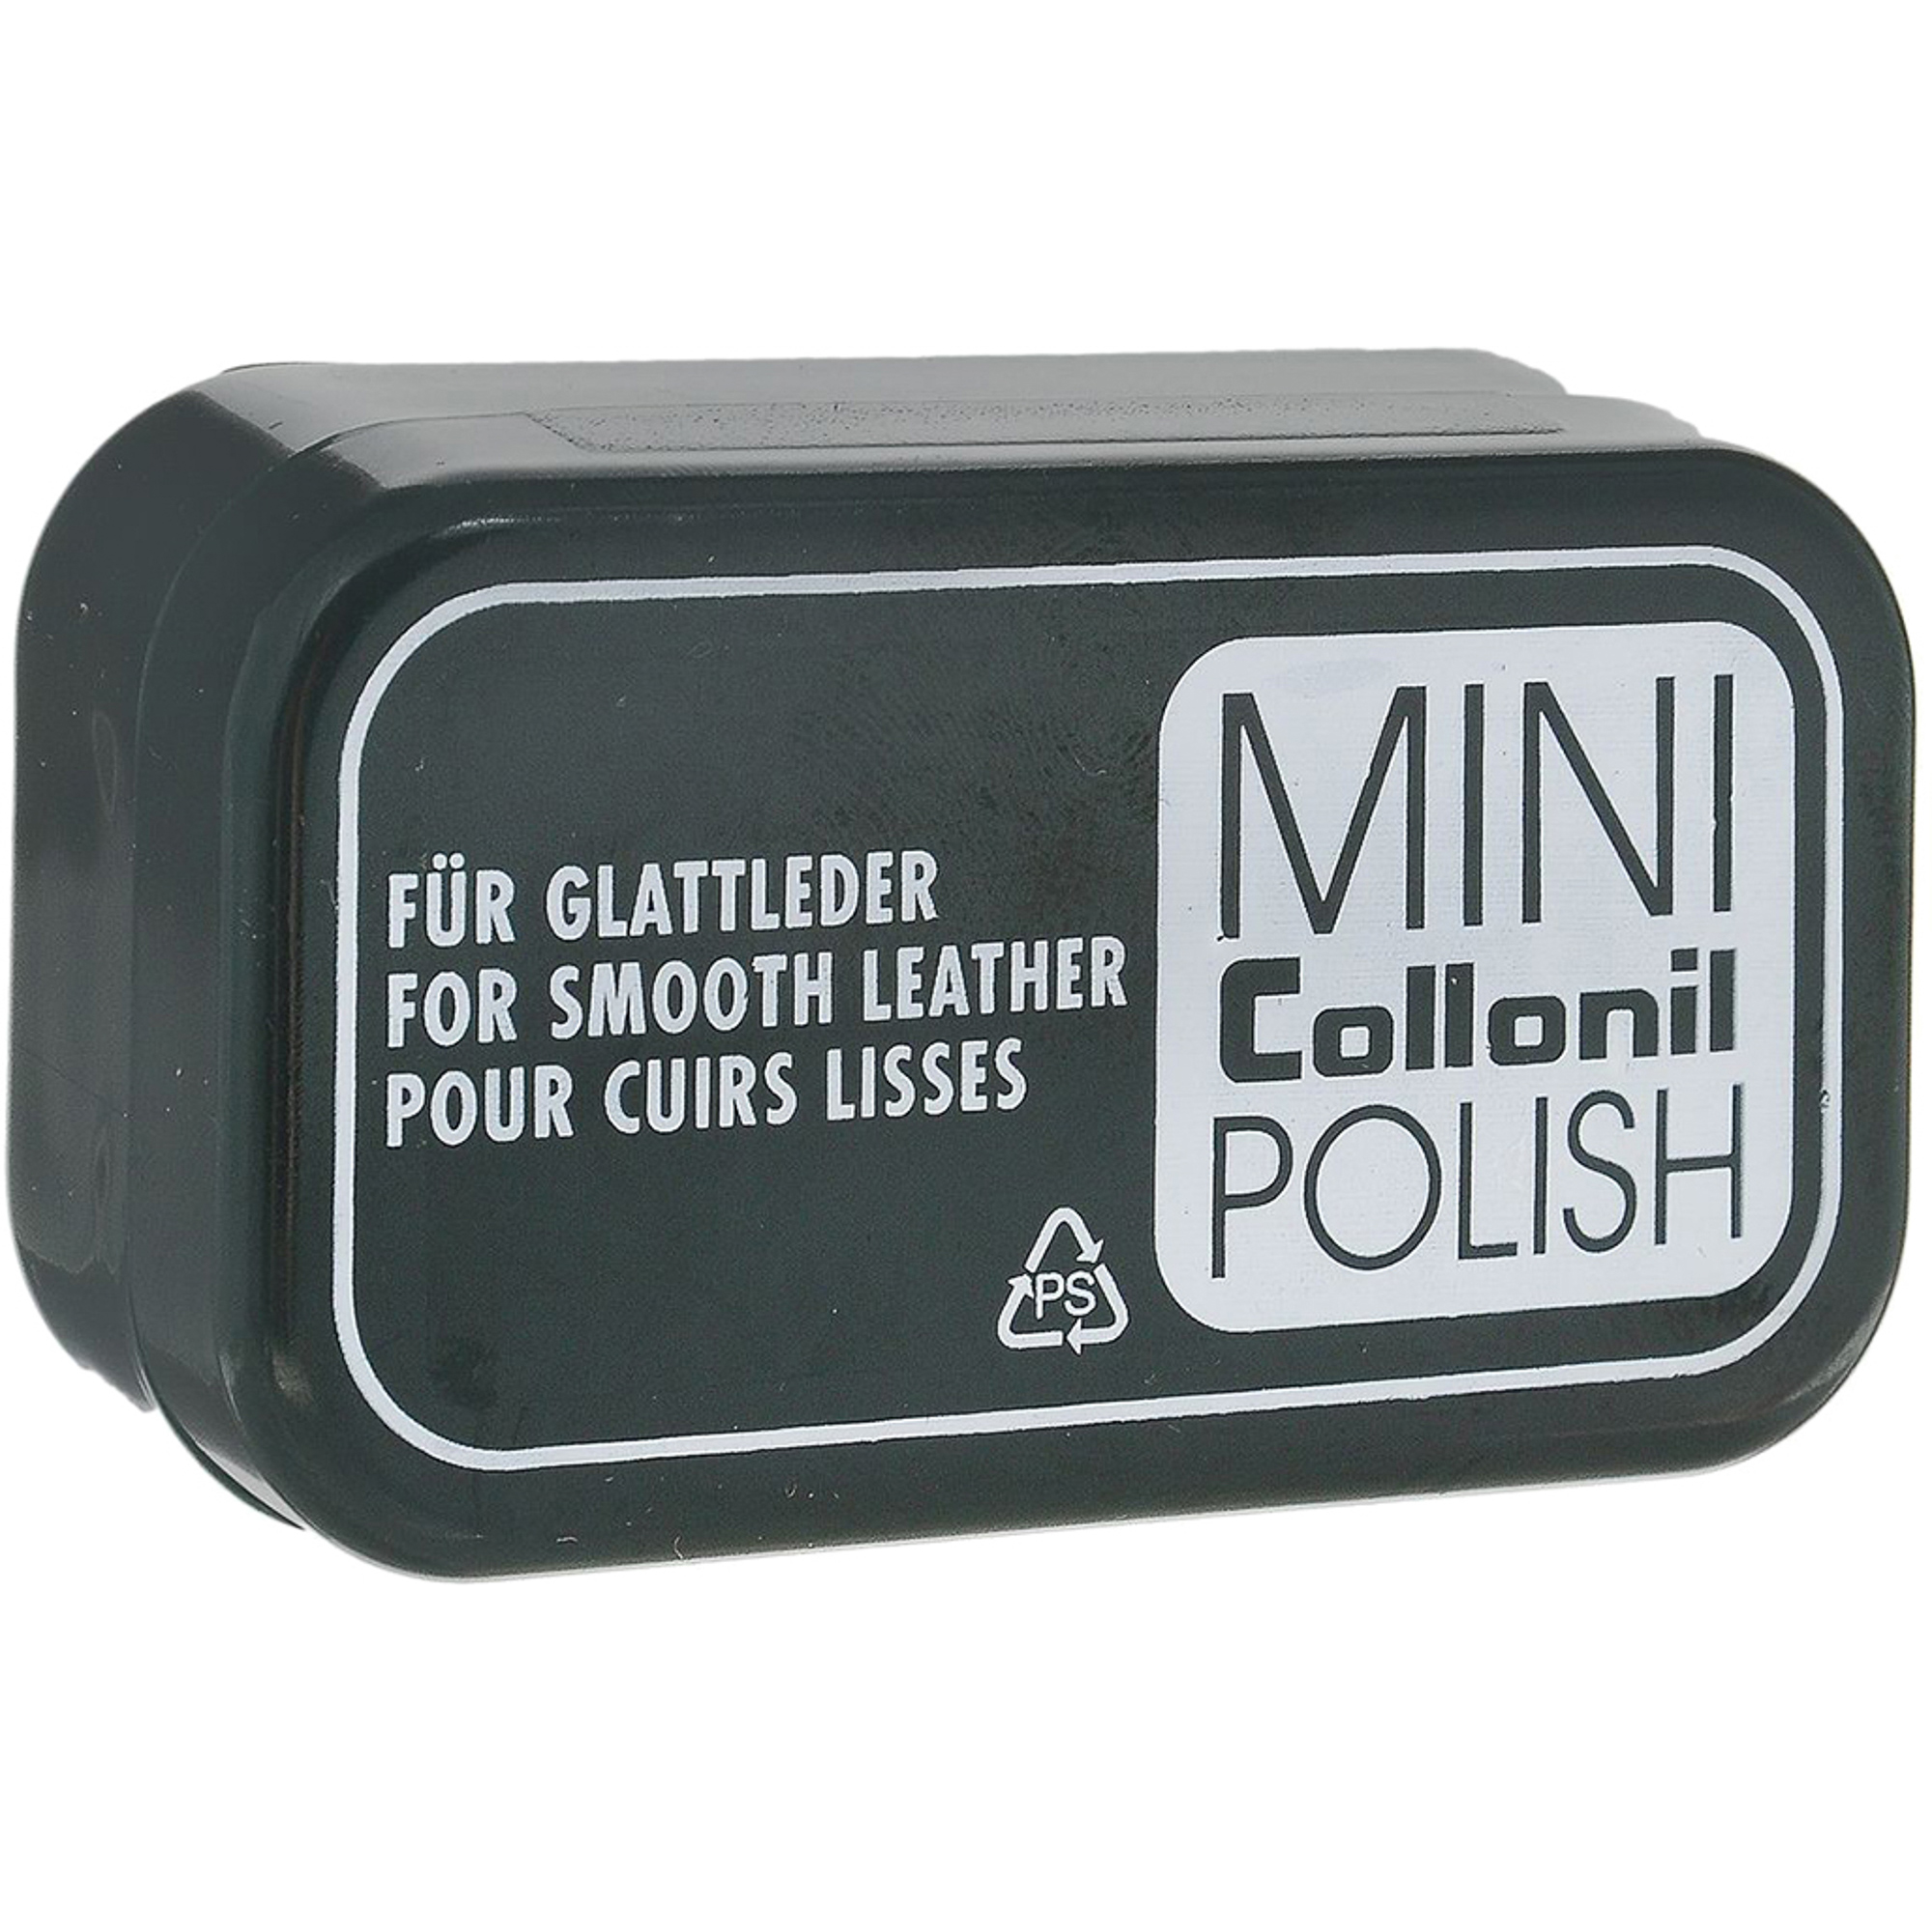 Губка для полировки Collonil Mini Polish крем collonil silicon polish нейтральный 75 мл